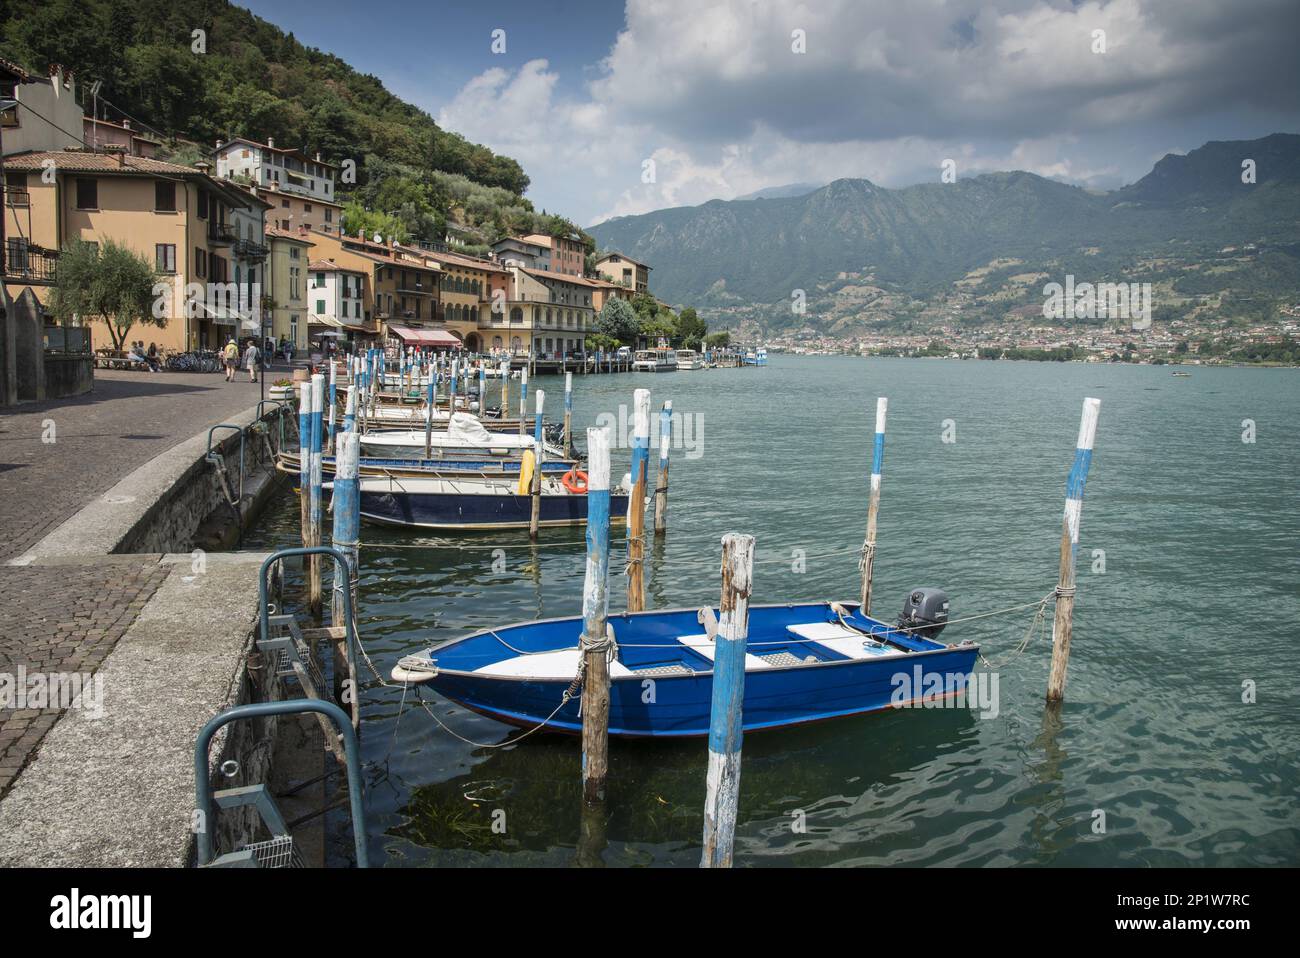 Promenades en bateau dans la ville sur l'île du lac, Peschiera Maraglio, Monte Isola, Lago d'Iseo, Val Camonica, Alpes centrales, Brescia, Lombardie, Italie Banque D'Images